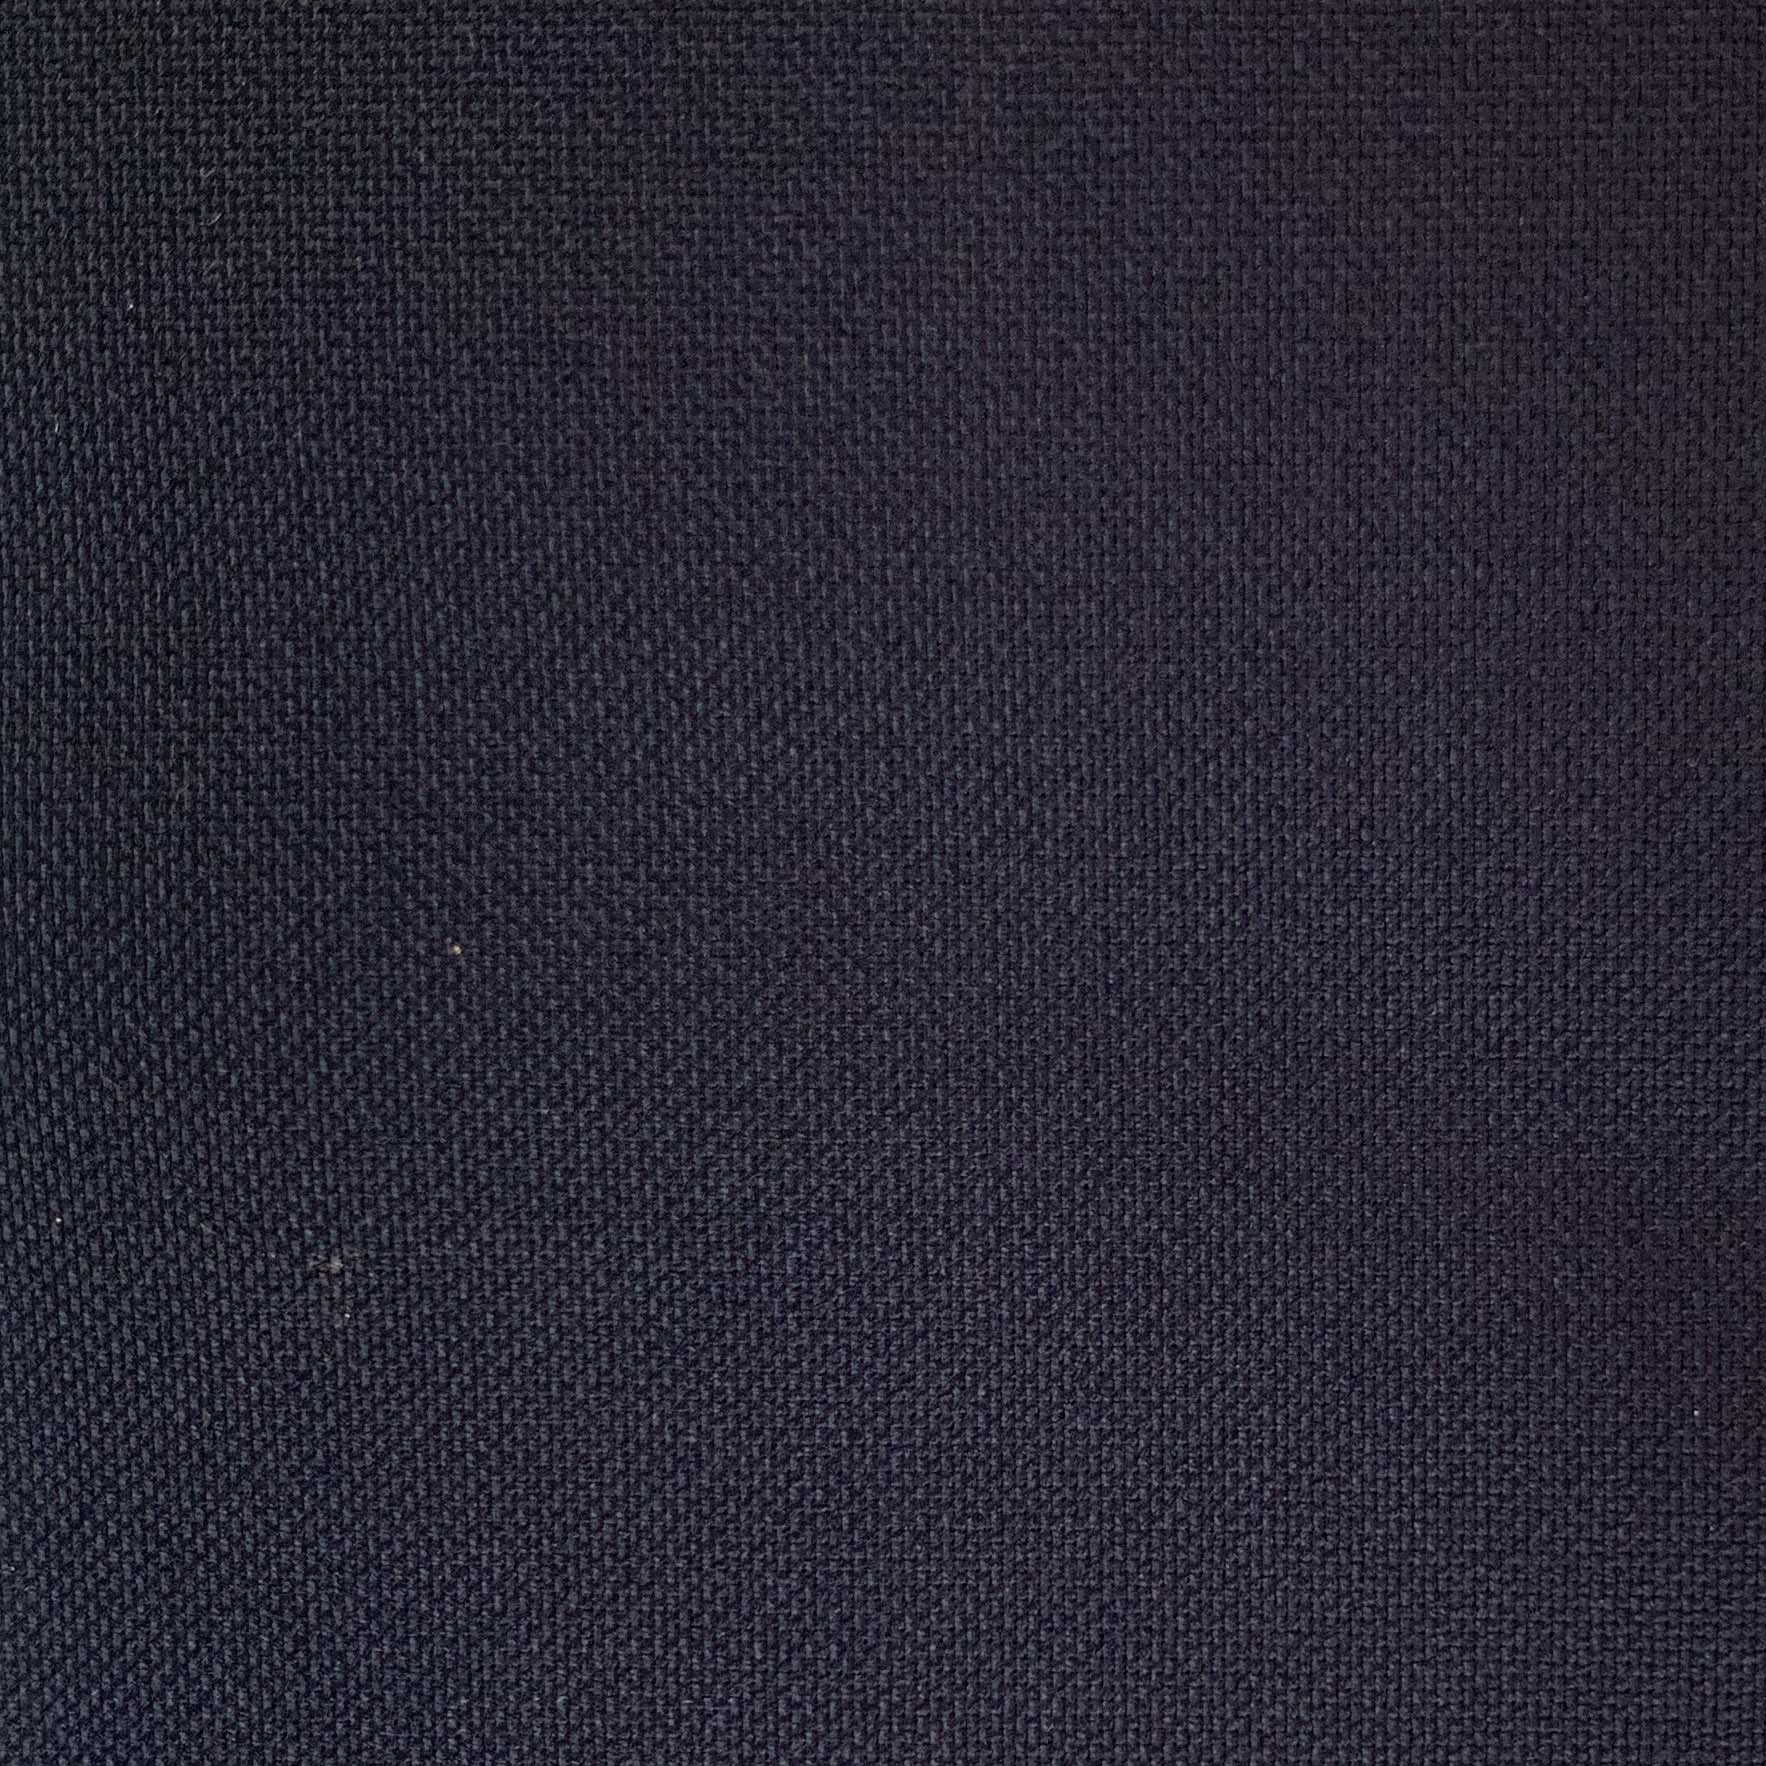 E0008 Fabric Sample image 1